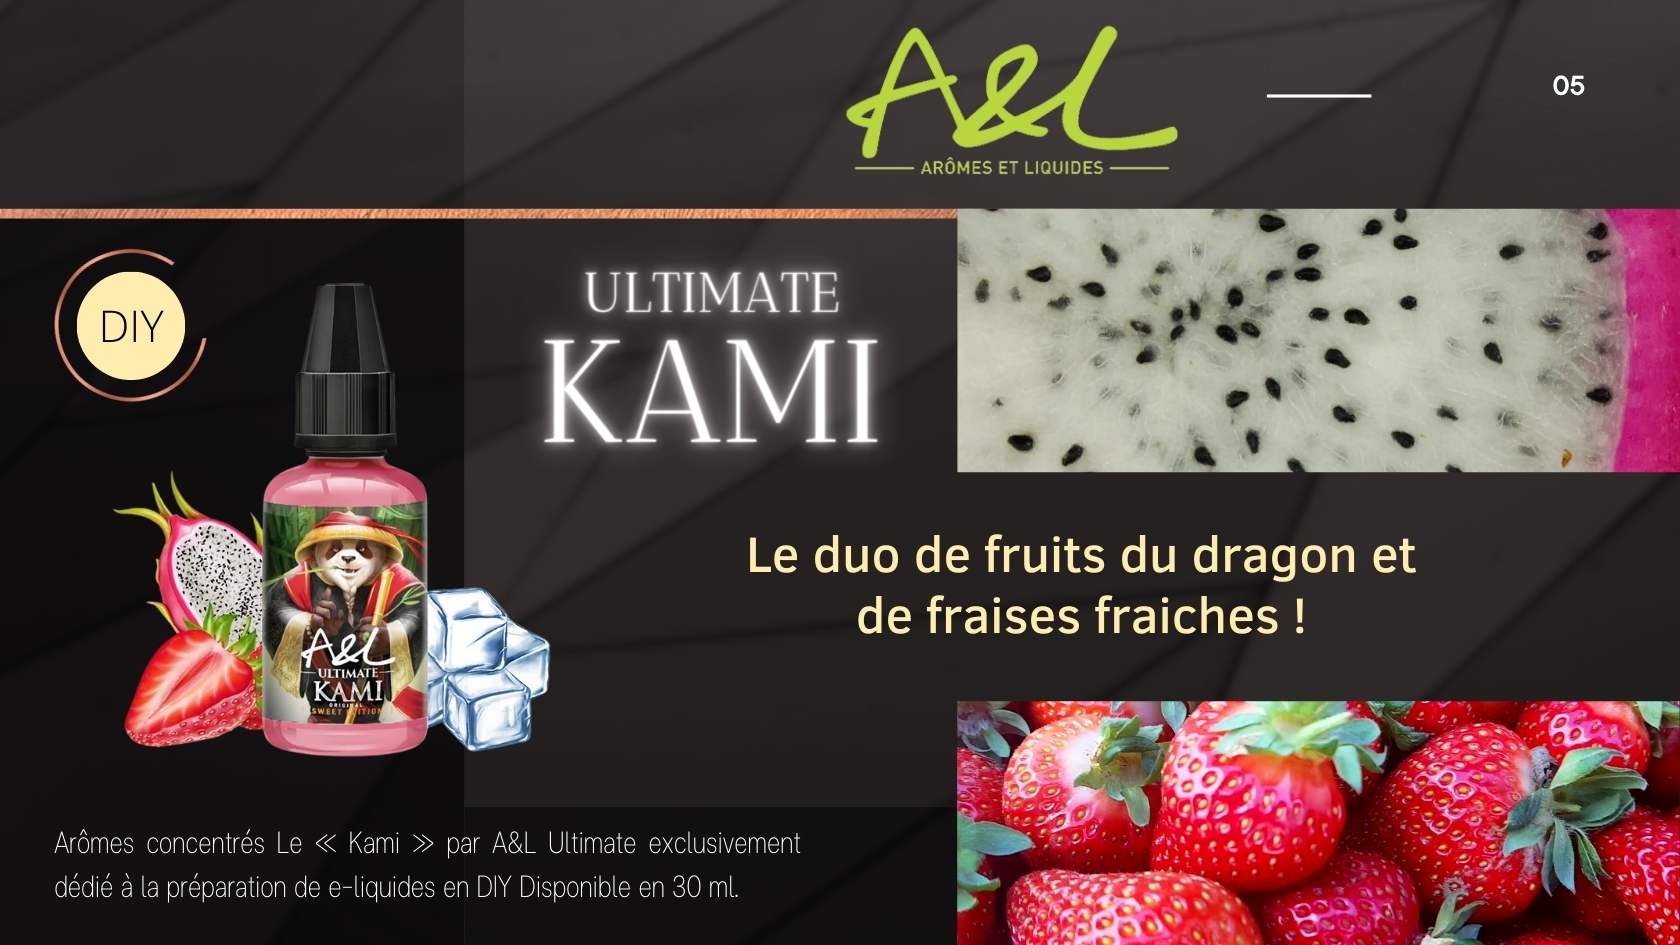 Nouveautés Quai des Brumes concentrés pour DIY A&L ULTIMATE KAMI 30 ML le duo de fruits du dragon et de fraises fraiches